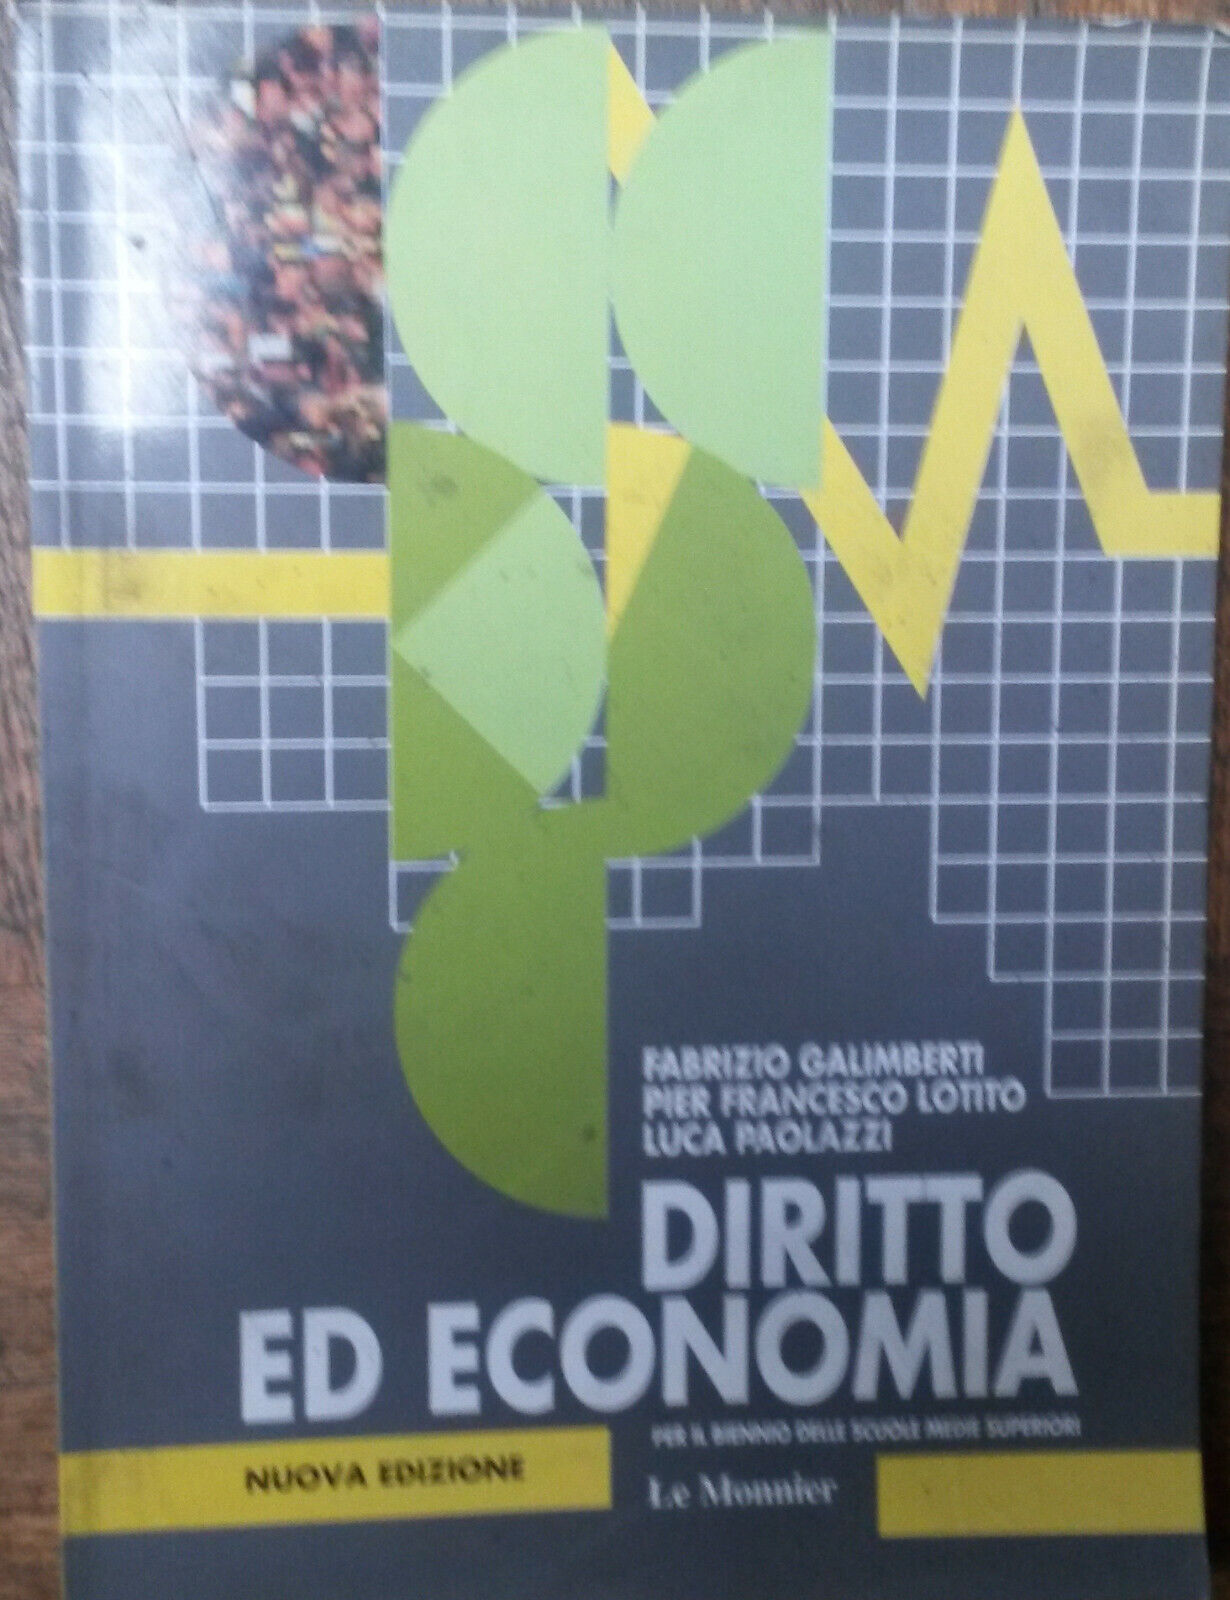 Diritto ed economia - Galimberti, Lotito,Paolazzi - Le Monnier,1997 - R